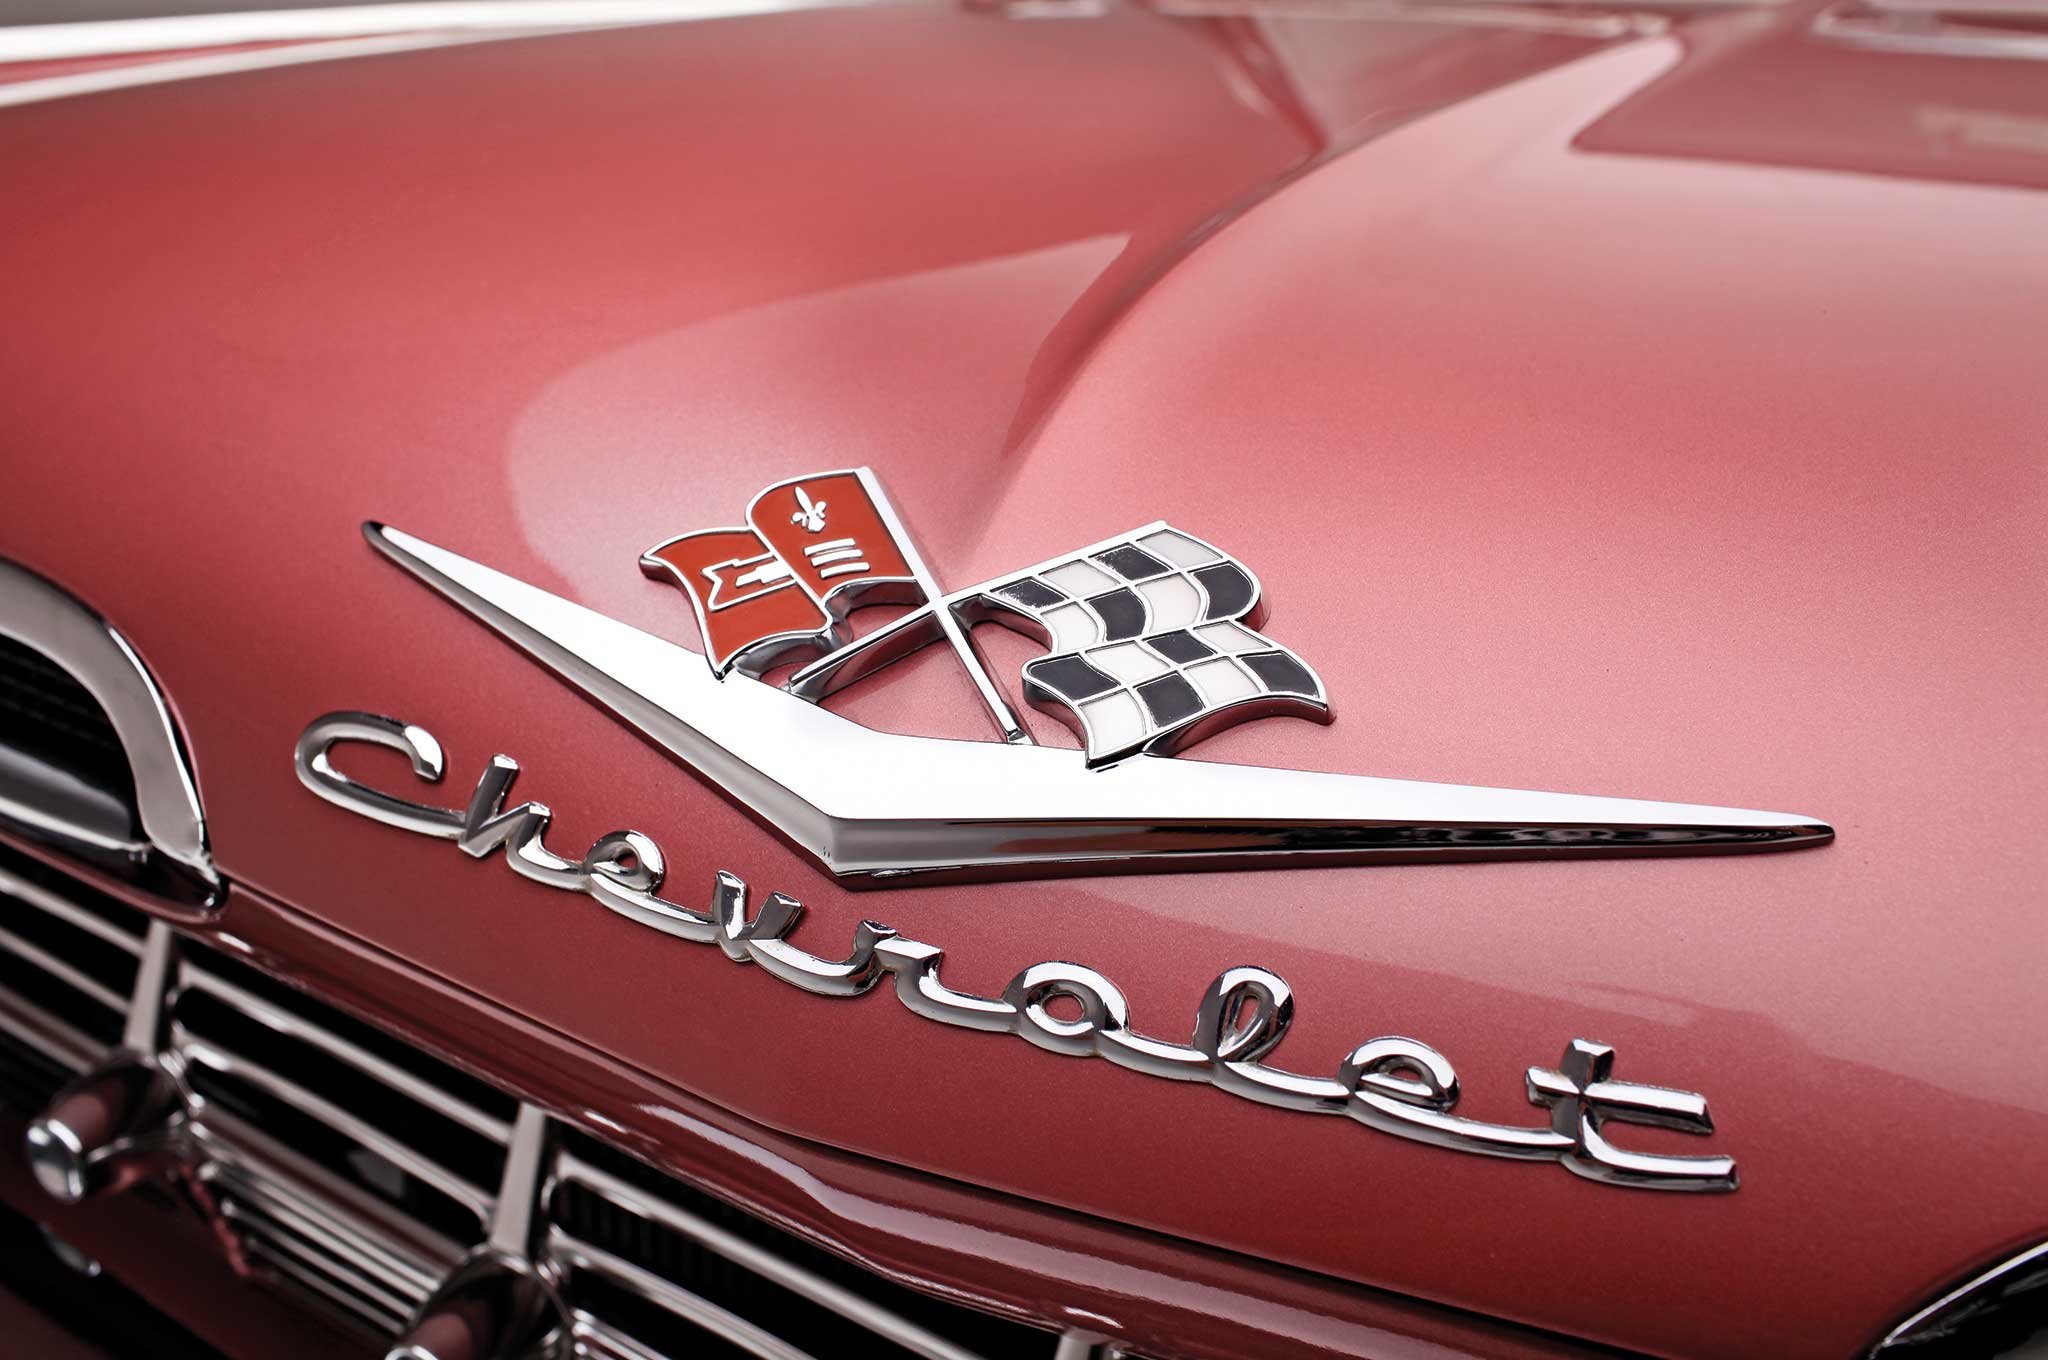 1959, Chevrolet, Impala, Custom, Tuning, Hot, Rods, Rod, Gangsta, Lowrider Wallpaper